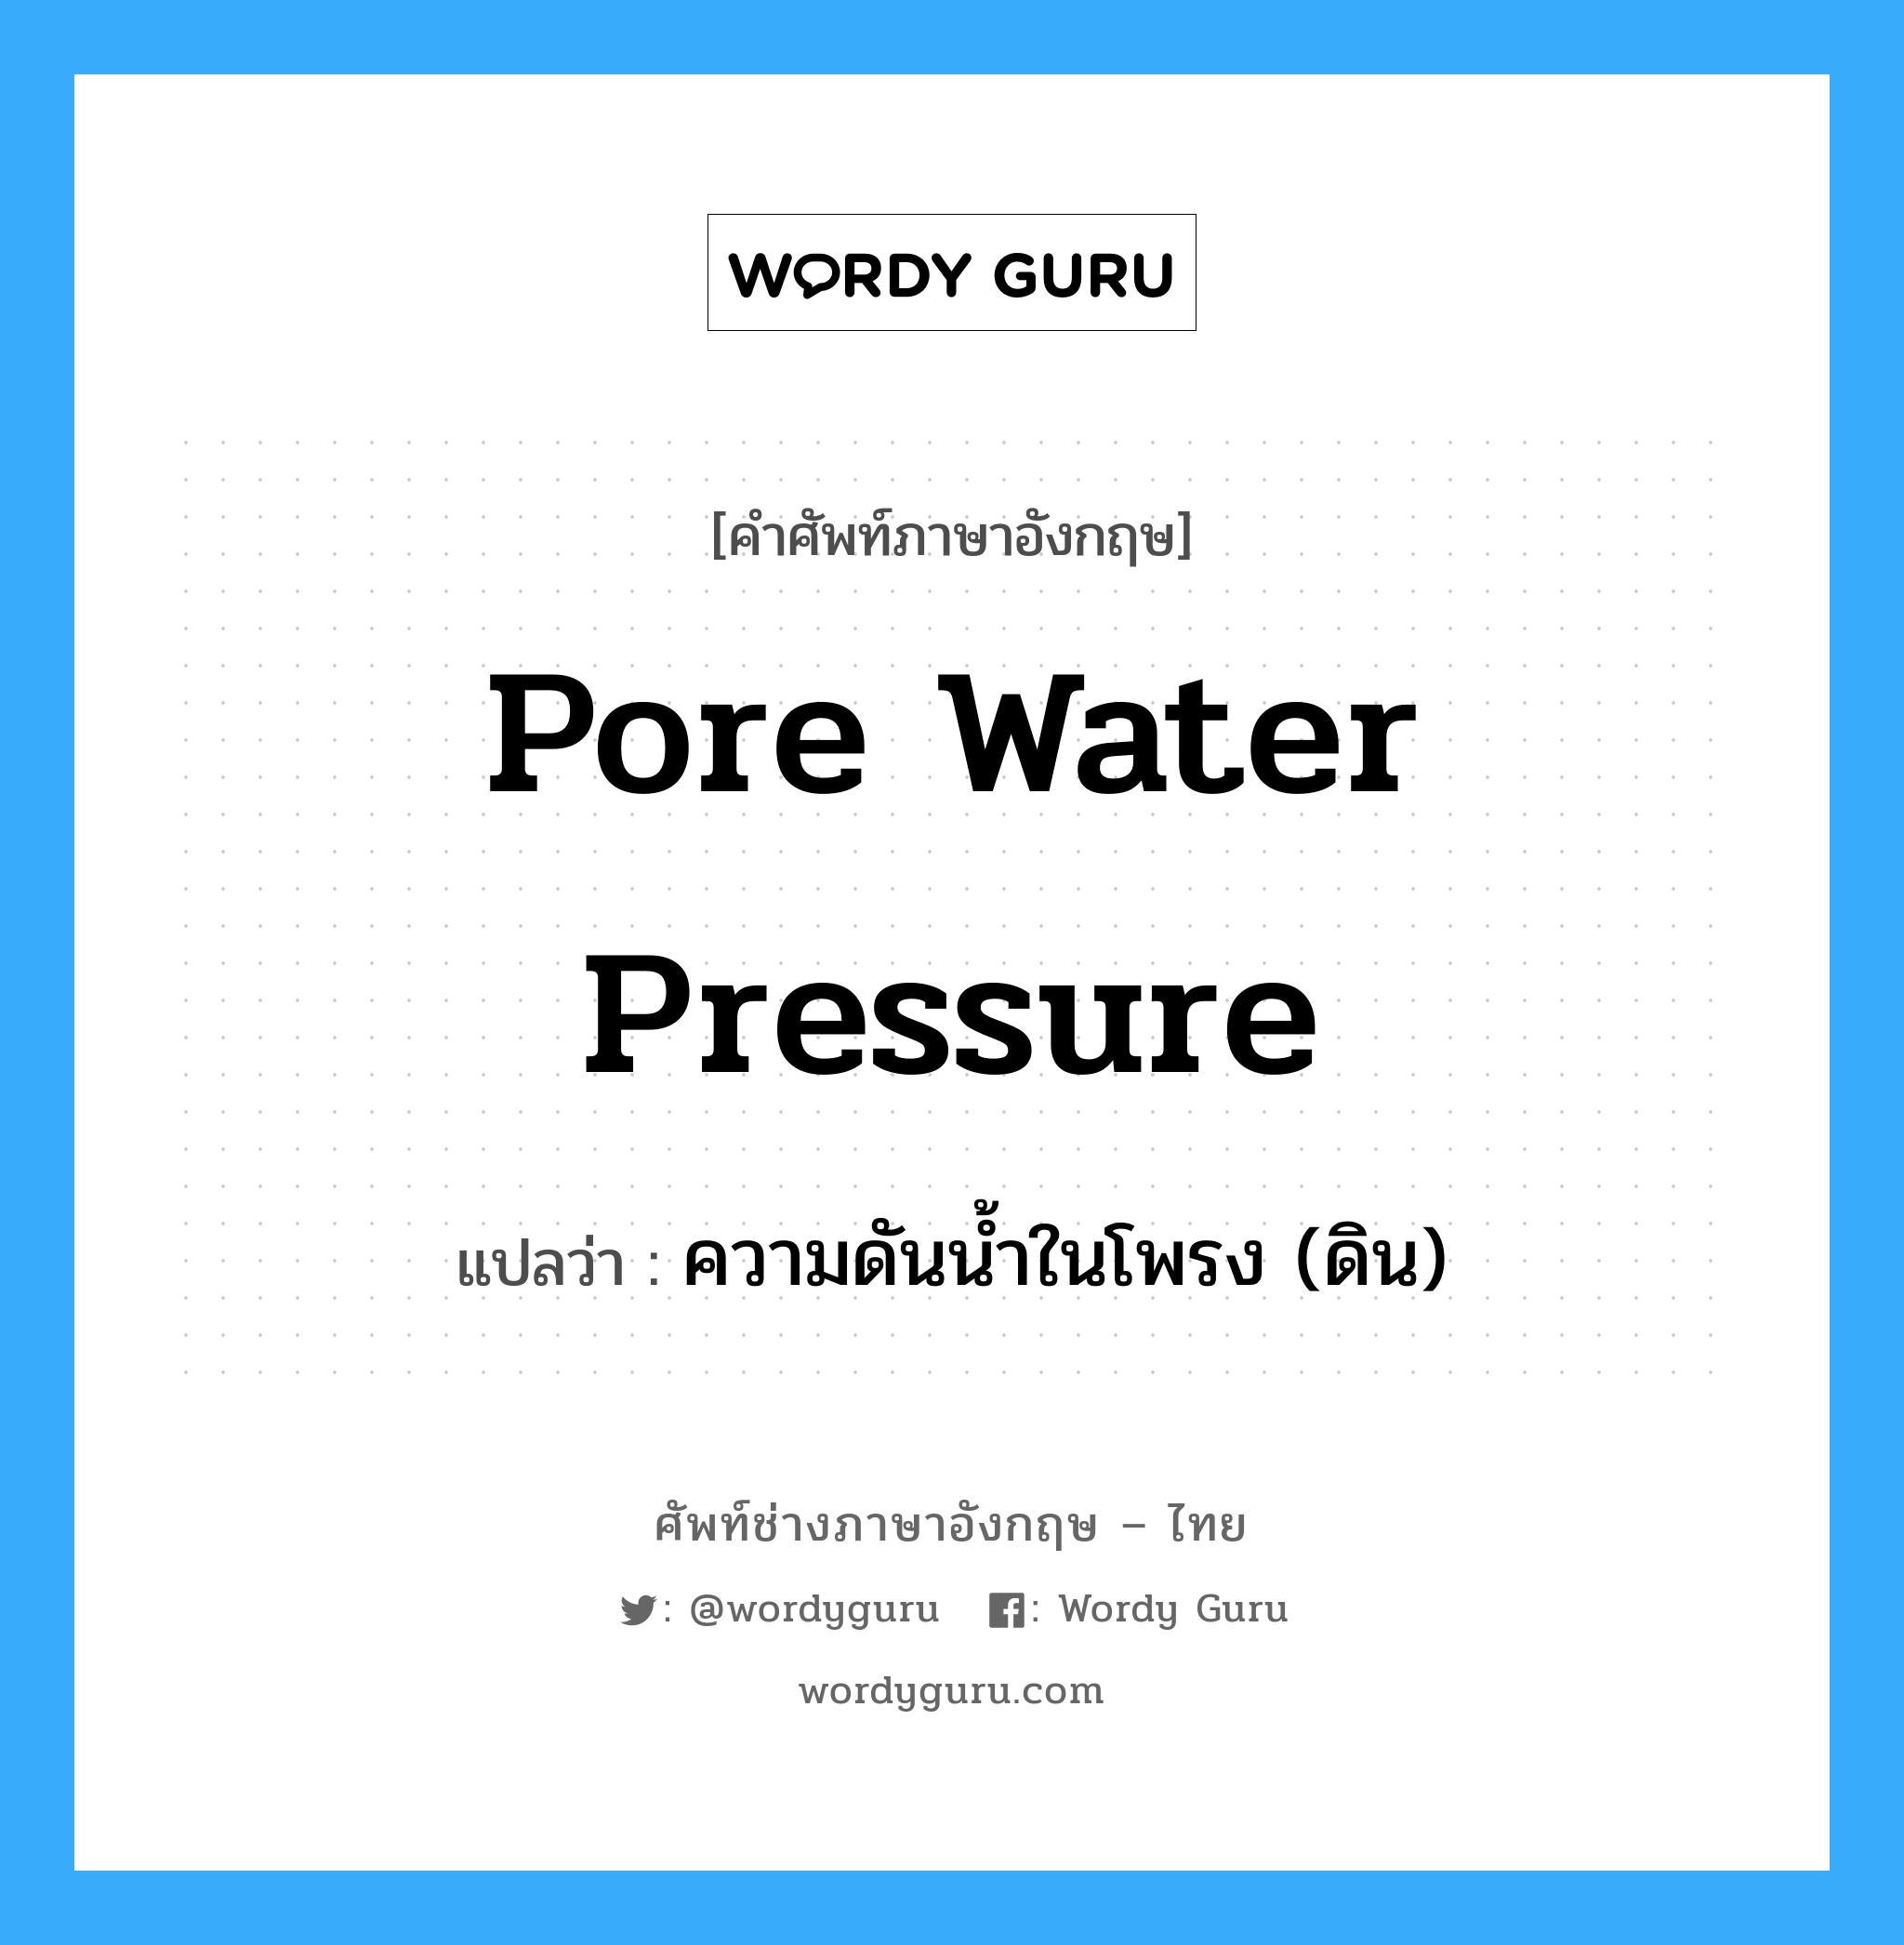 pore water pressure แปลว่า?, คำศัพท์ช่างภาษาอังกฤษ - ไทย pore water pressure คำศัพท์ภาษาอังกฤษ pore water pressure แปลว่า ความดันน้ำในโพรง (ดิน)